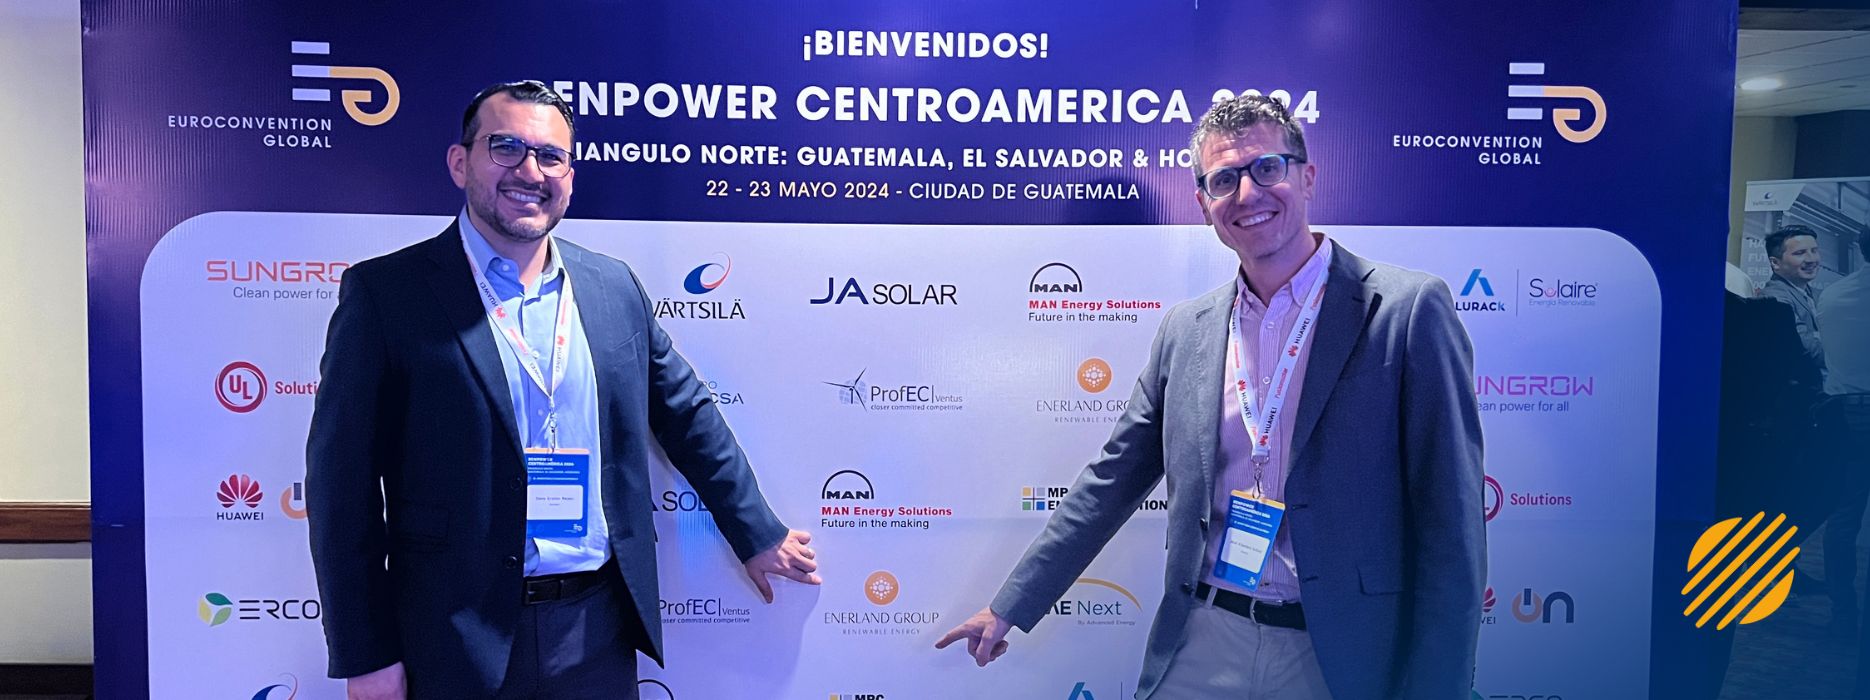 Renpower Centroamérica 2024